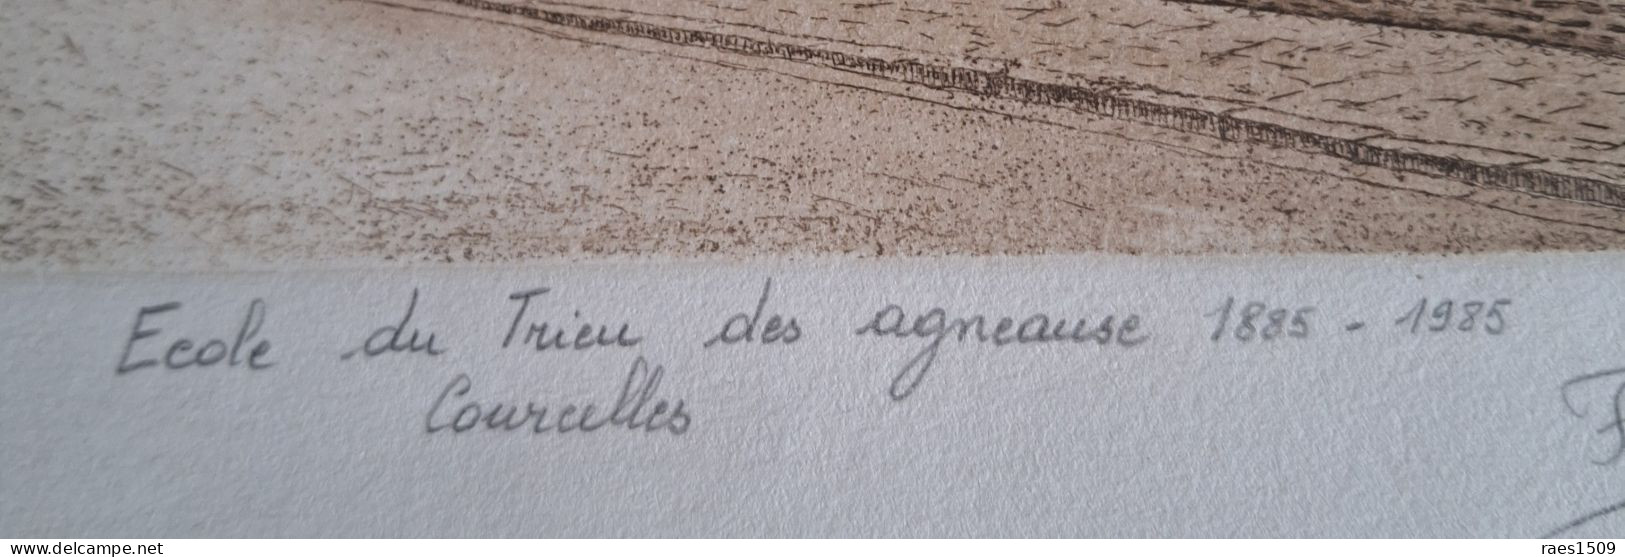 Eau Forte De L'école Du Trieu Des Agneaux De Courcelles  1885-1985 Signer Par L'auteur Et N°48/100 - Colecciones